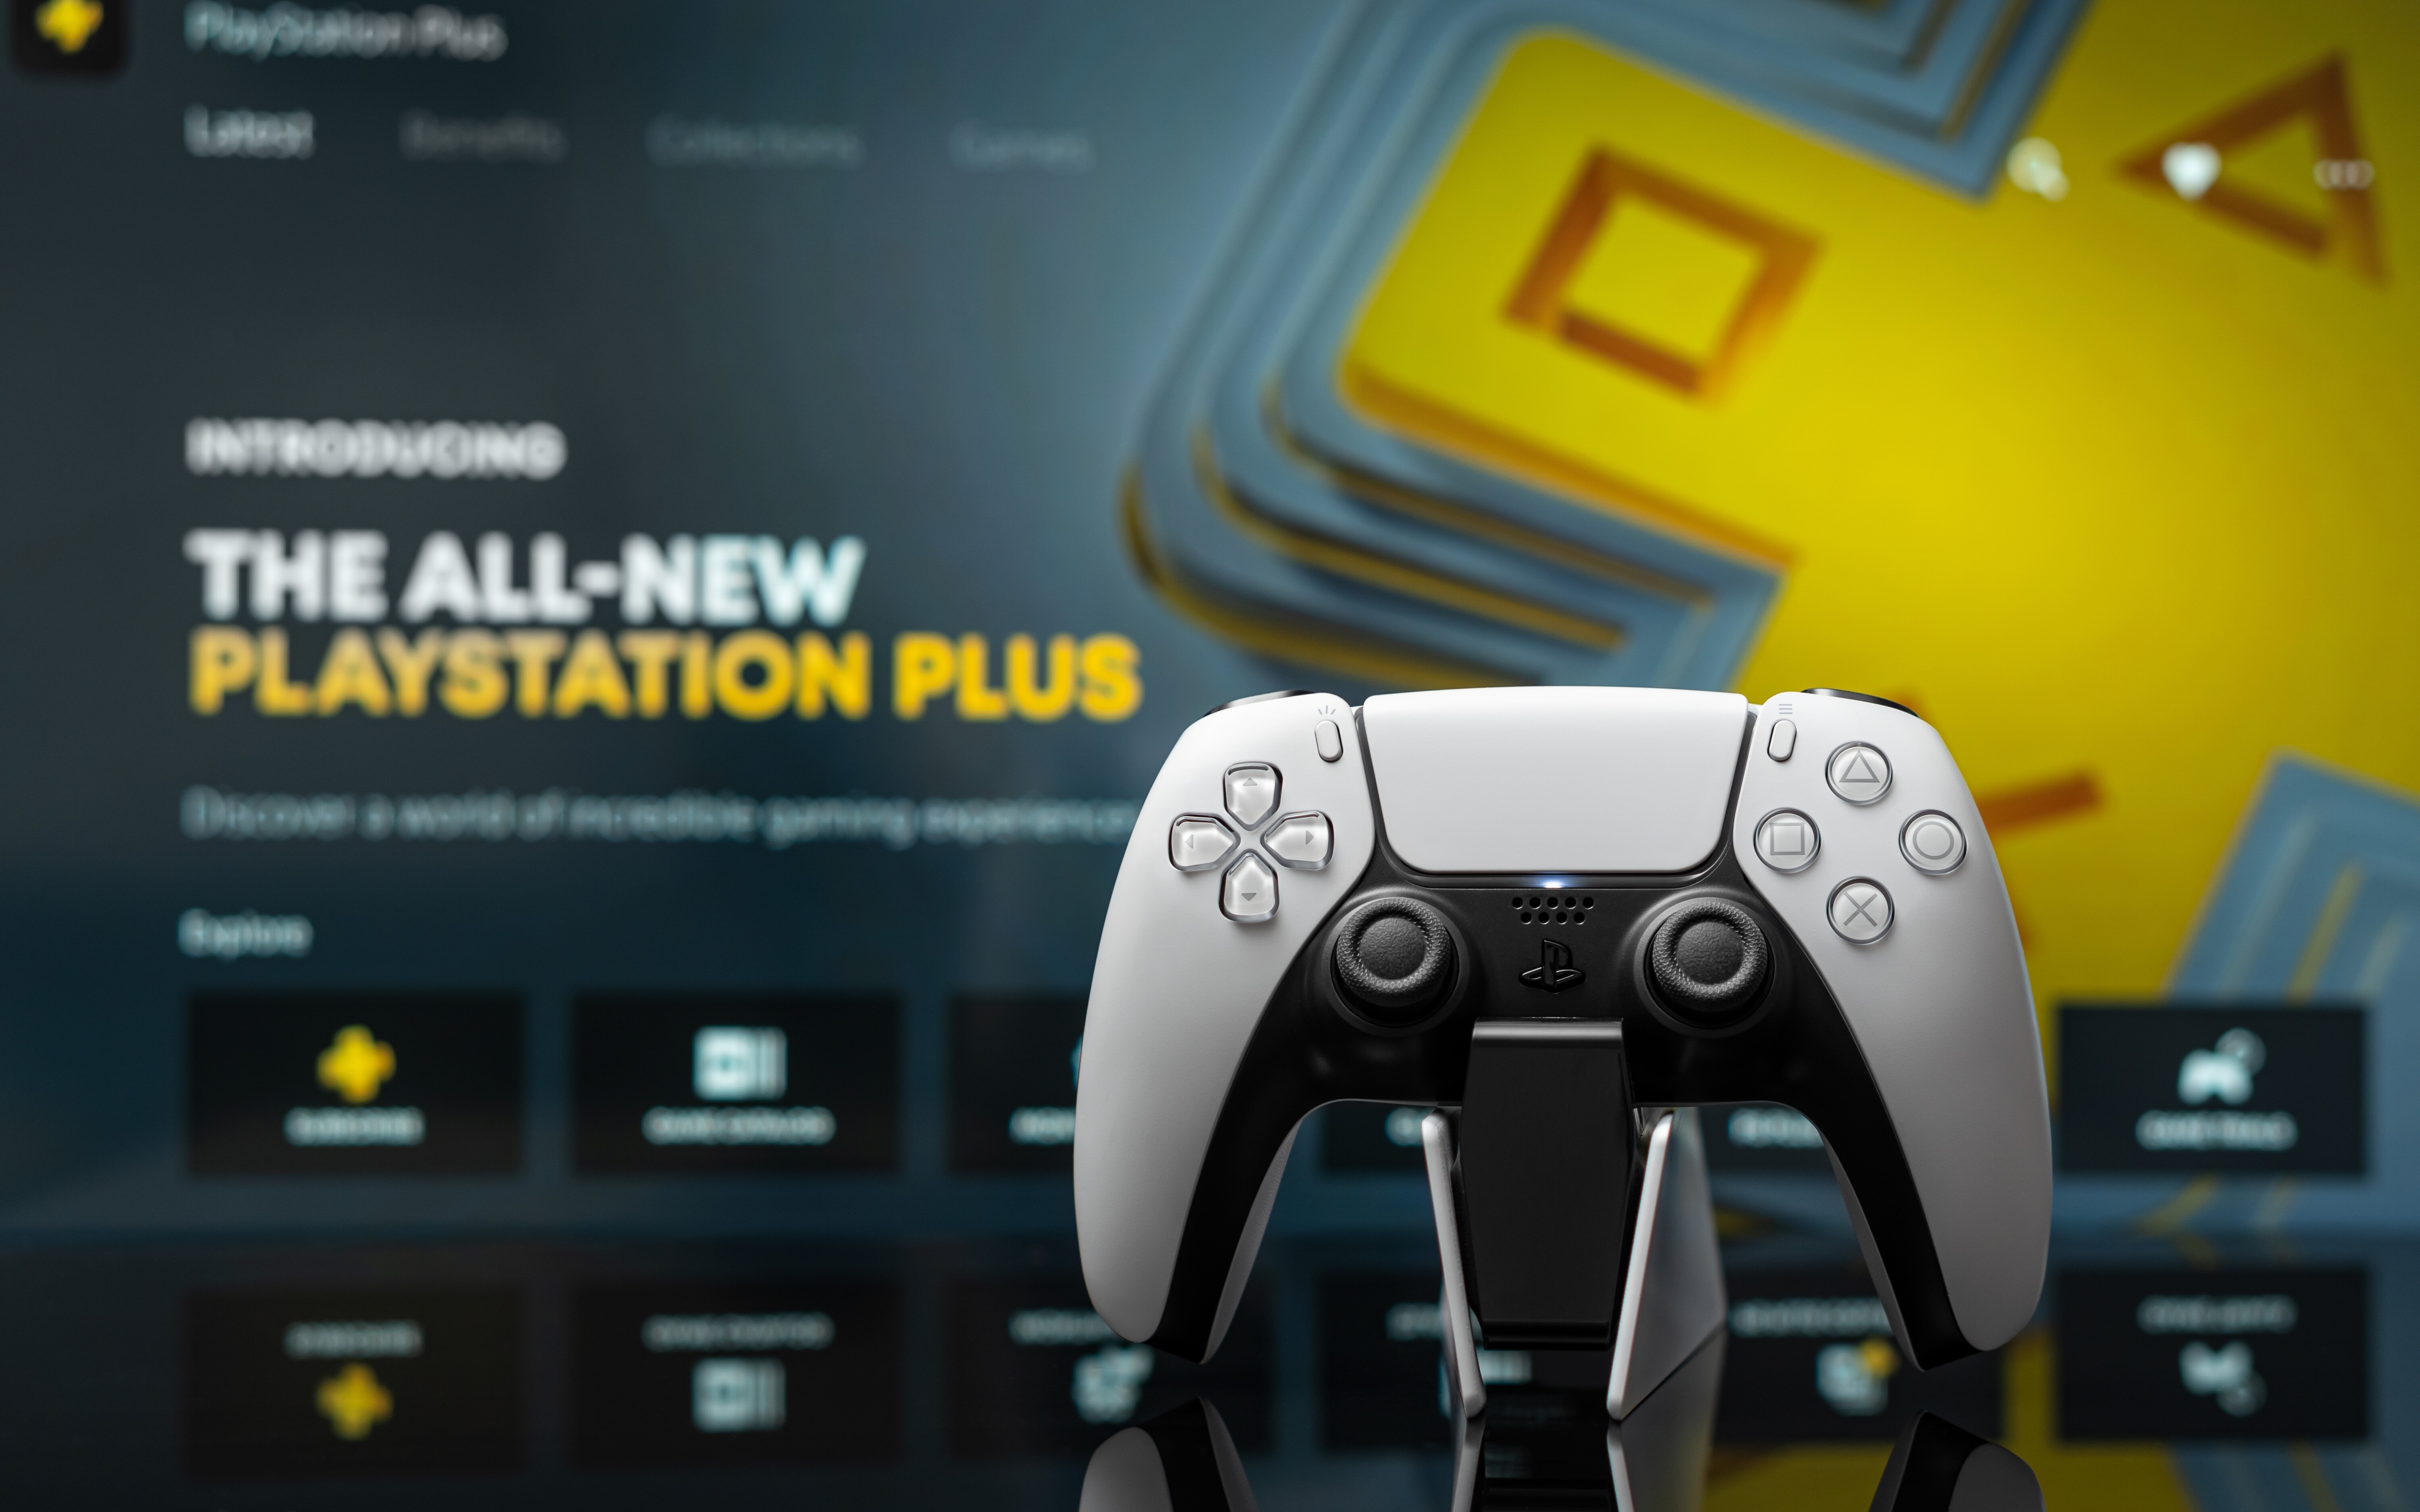 ¡PS Plus Premium tiene un nuevo rey!  Un gran resultado para el juego de PlayStation.